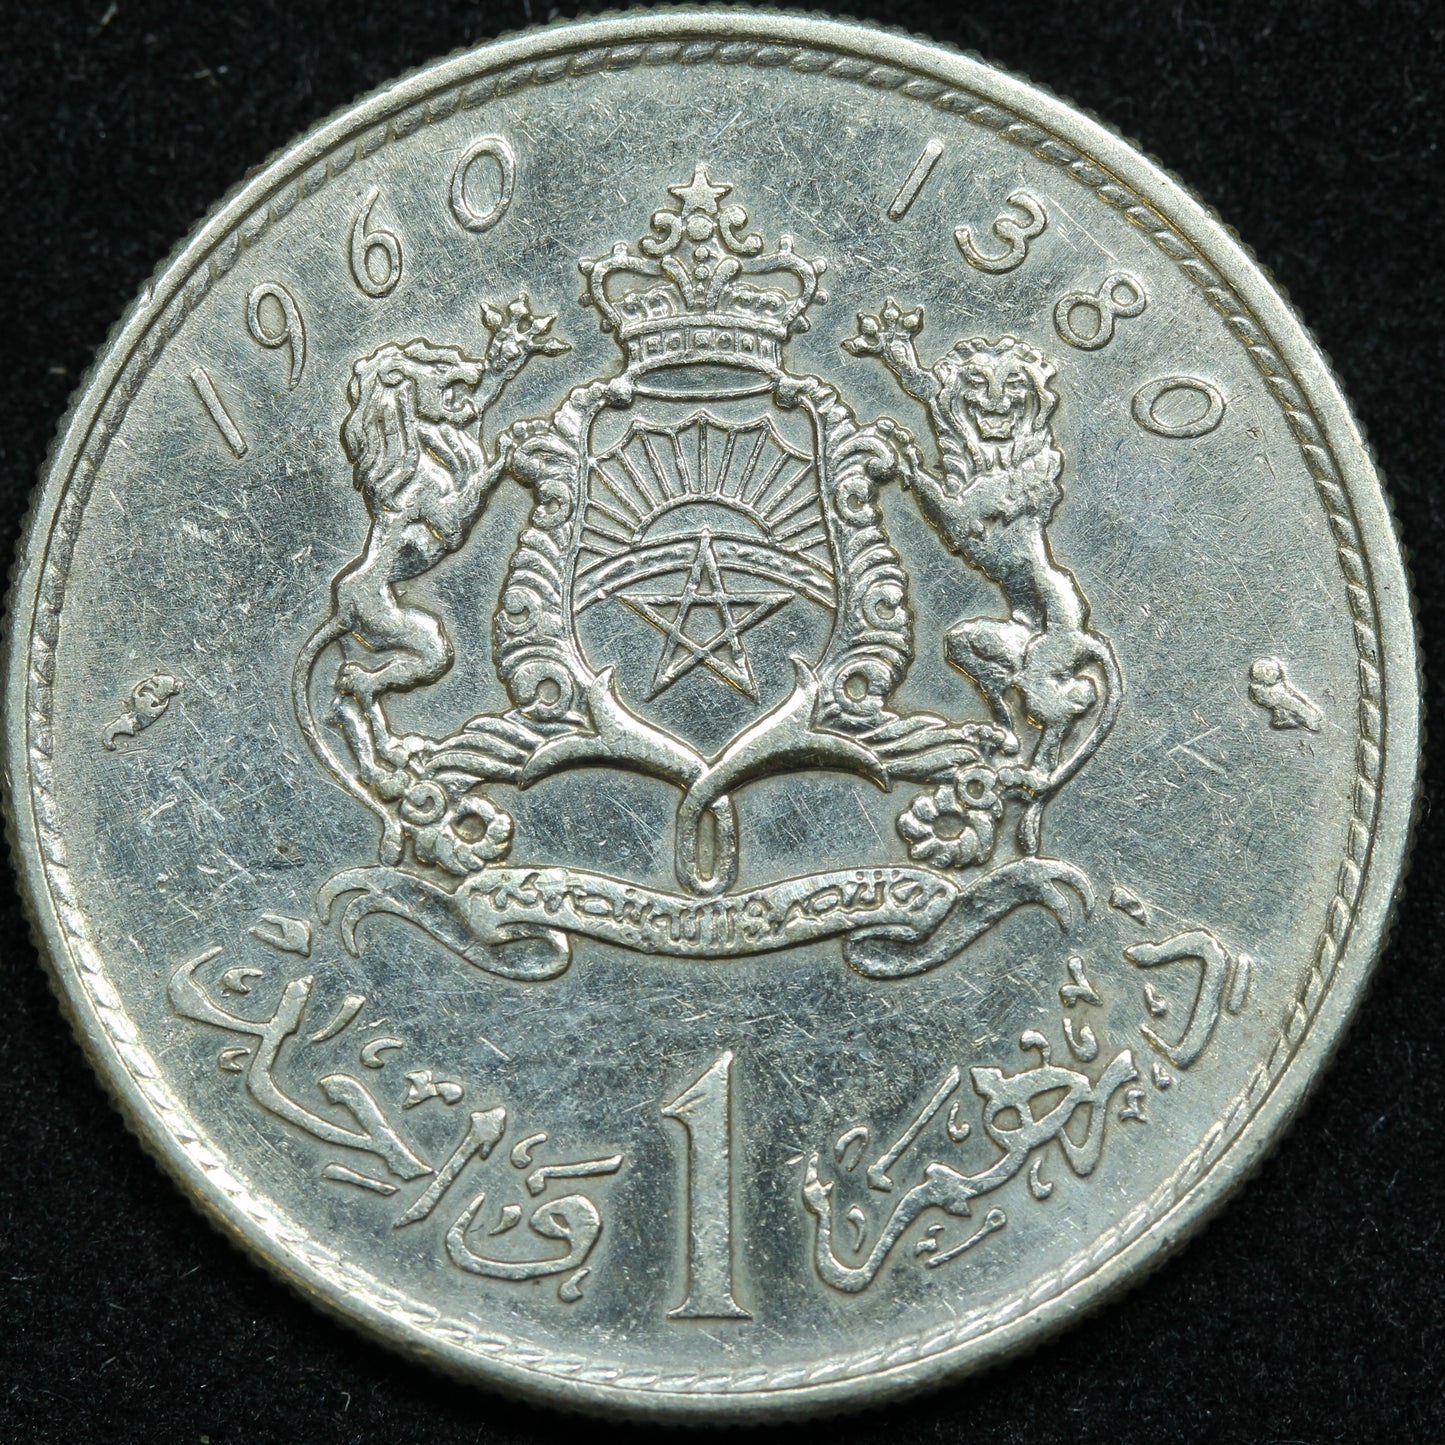 1960 (1380) Morocco 1 Dirham Silver Coin  - Y# 55